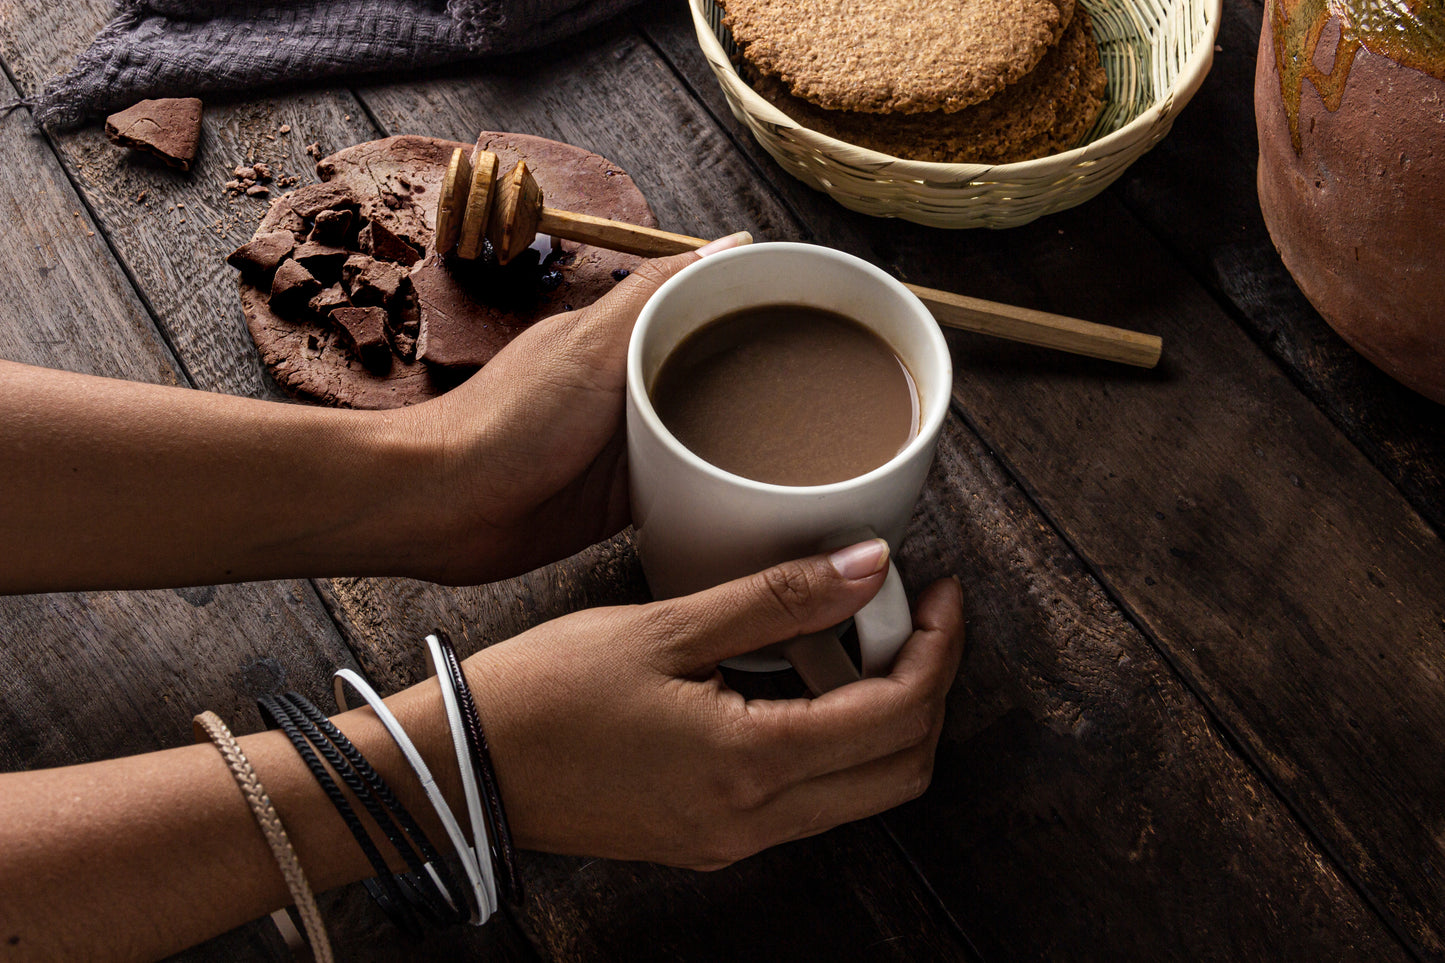 Ein Paar Hände hält eine weiße Tasse mit heißem Getränk, umgeben von einem rustikalen Holzbrett, auf dem sich eine Honigstange, zerbrochene Schokolade und ein Korb mit Keksen befinden. Die Szene ist gemütlich und lädt zum Genießen ein.